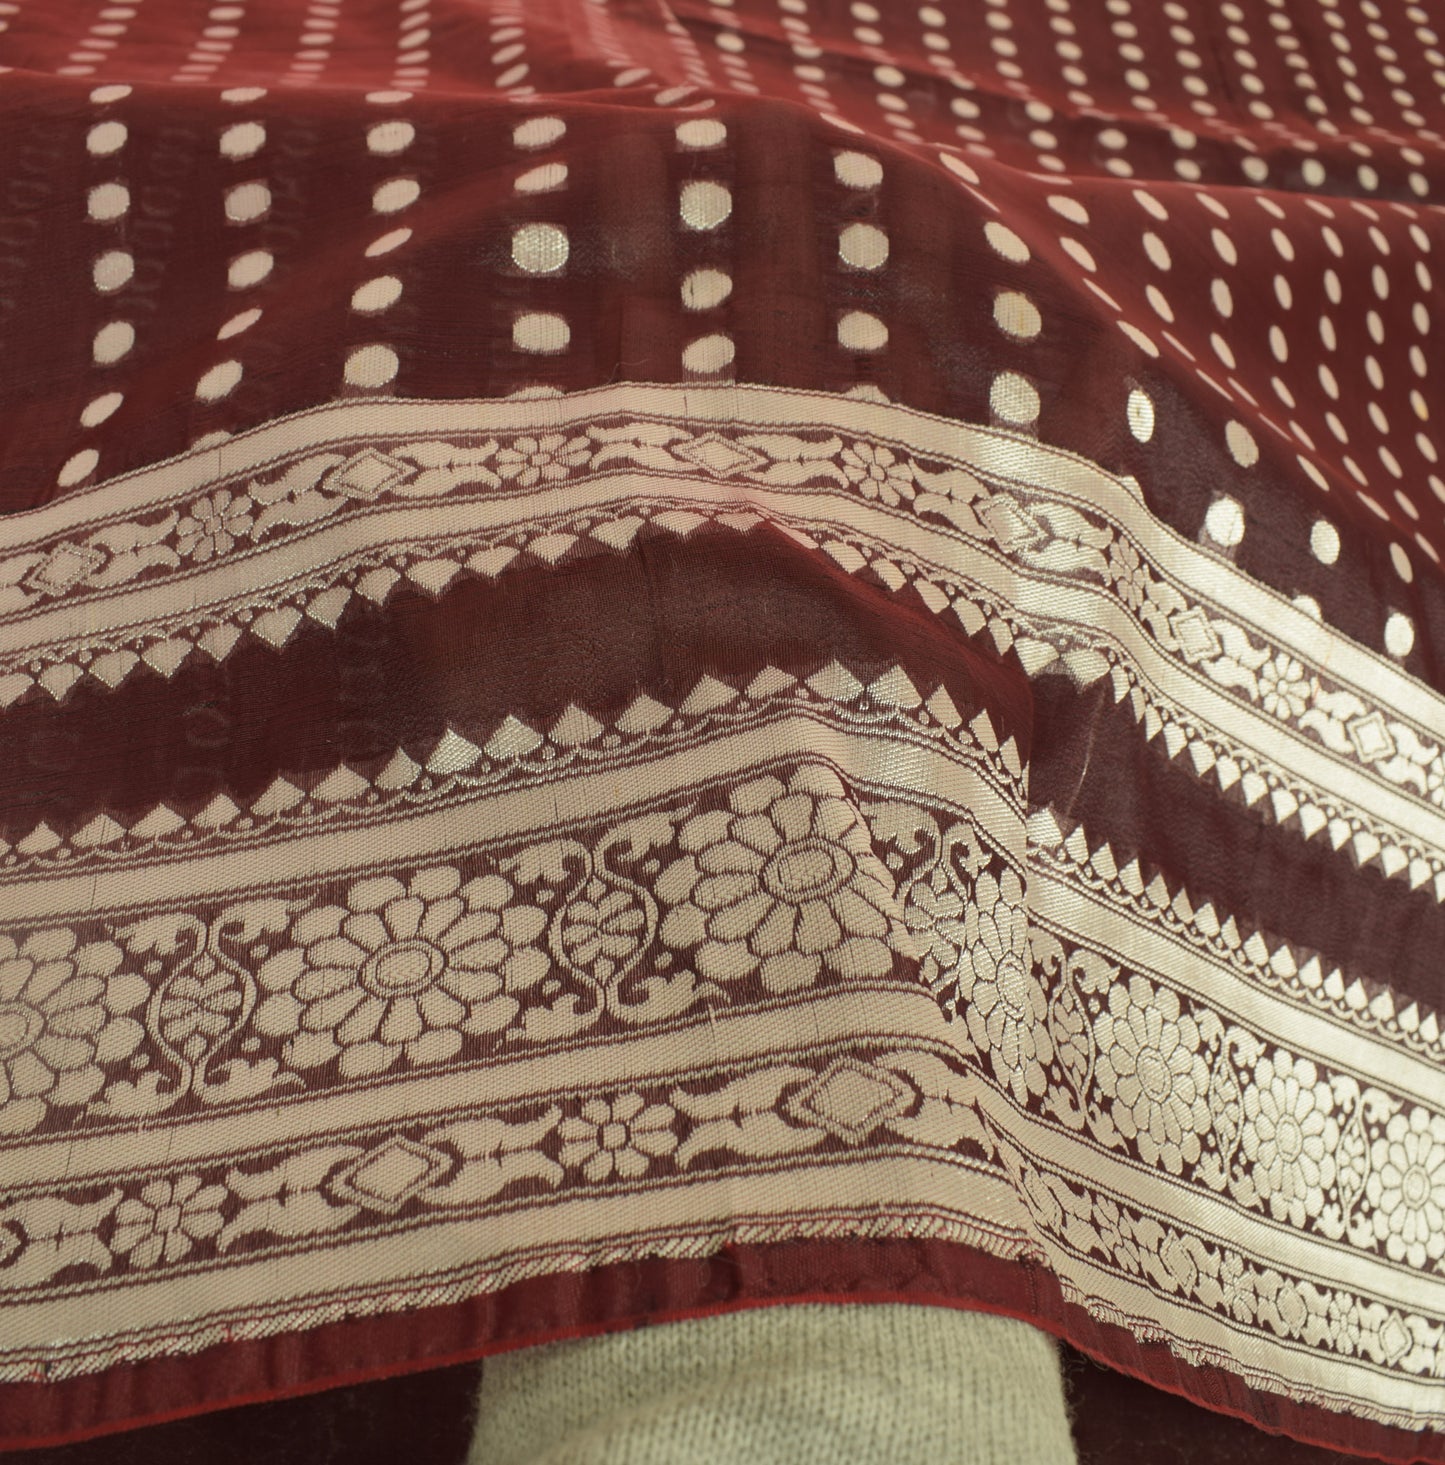 Sushila Vintage Burgundy Saree Silk Blend Banarasi Brocade Zari Woven Fabric